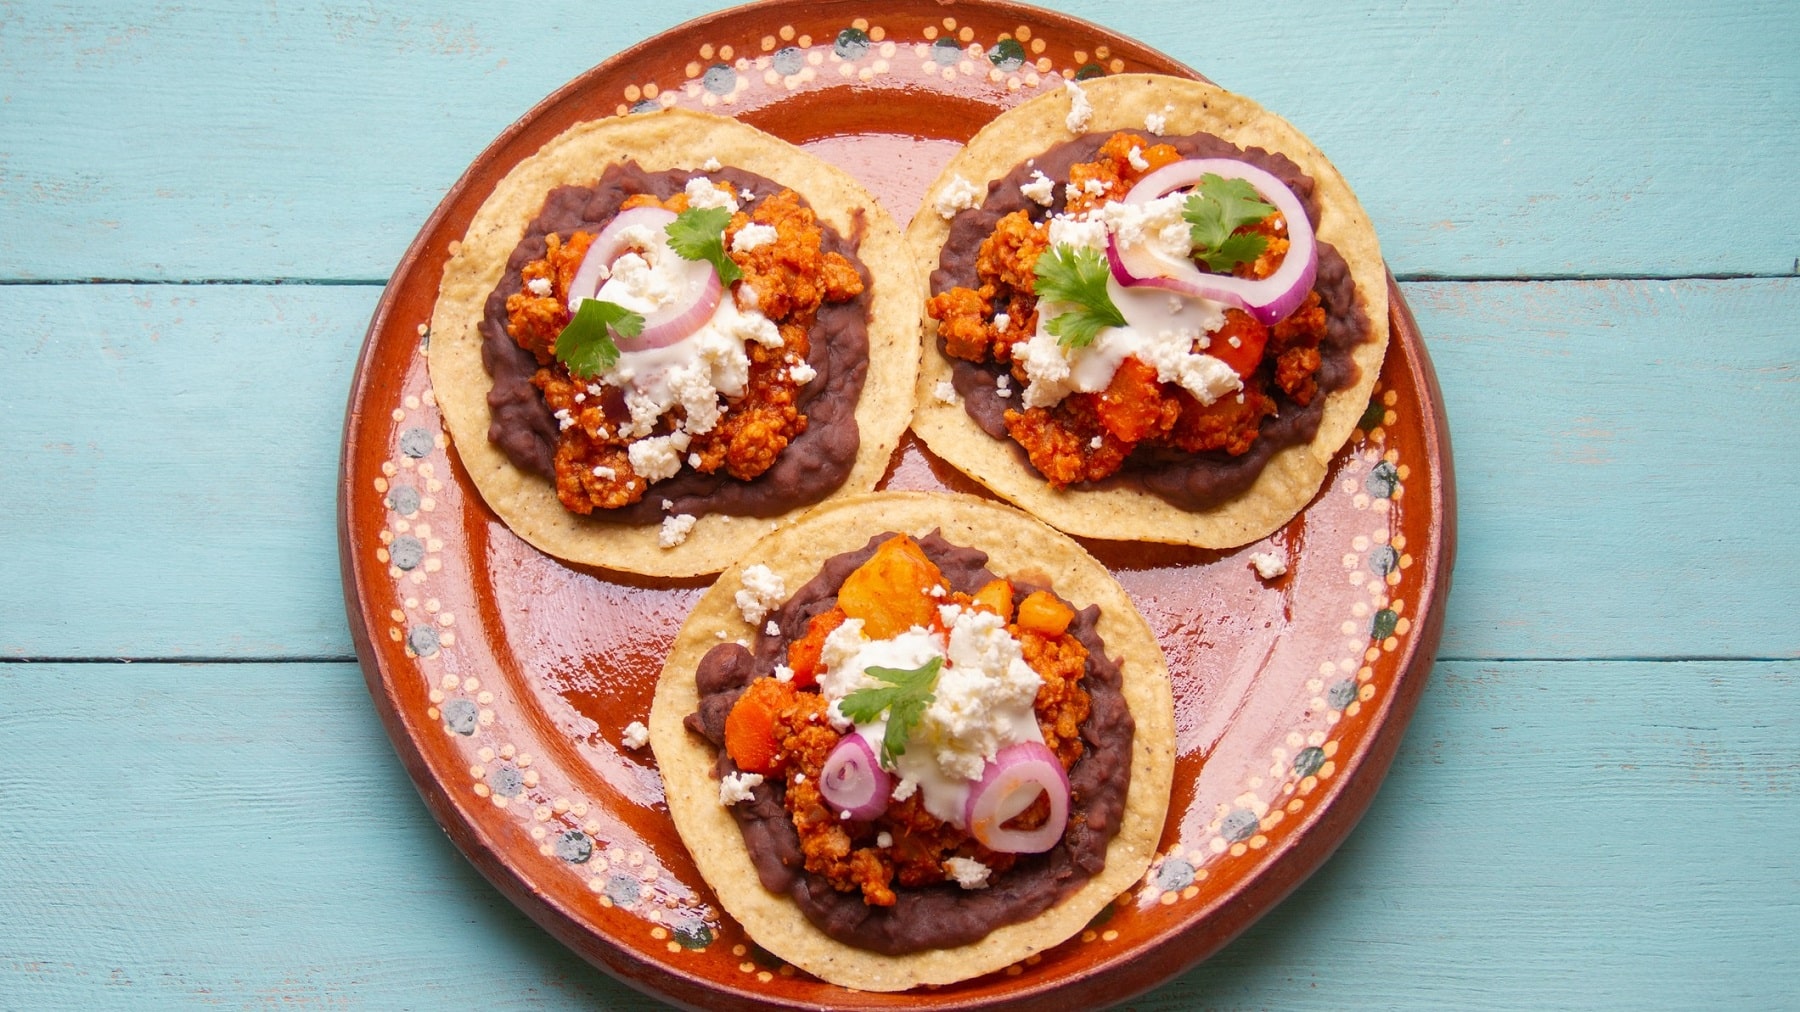 Drei vegane Hackfleisch-Tacos mit Bohnenmus, roten Zwiebeln, Koriander, saurer Sahne und Feta auf einem bunten Teller in der Draufsicht.